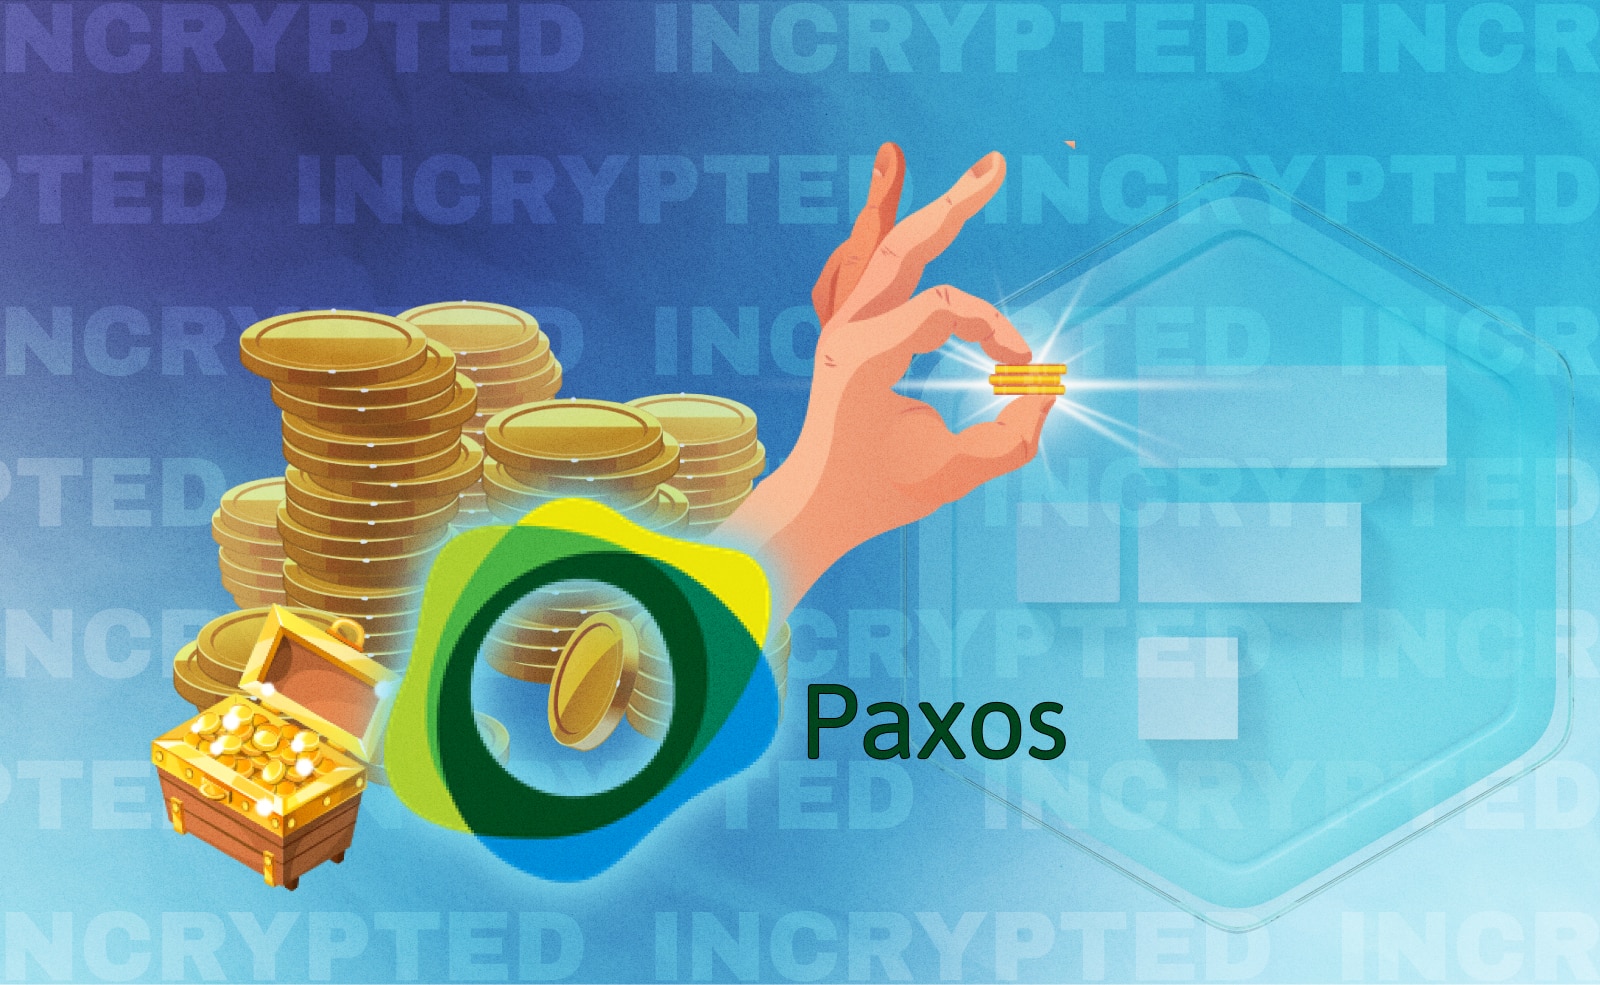 Компании Paxos удалось вернуть токены Paxos Golds (PAGX) из кошелька хакера, который в ноябре ограбил криптобиржу FTX.